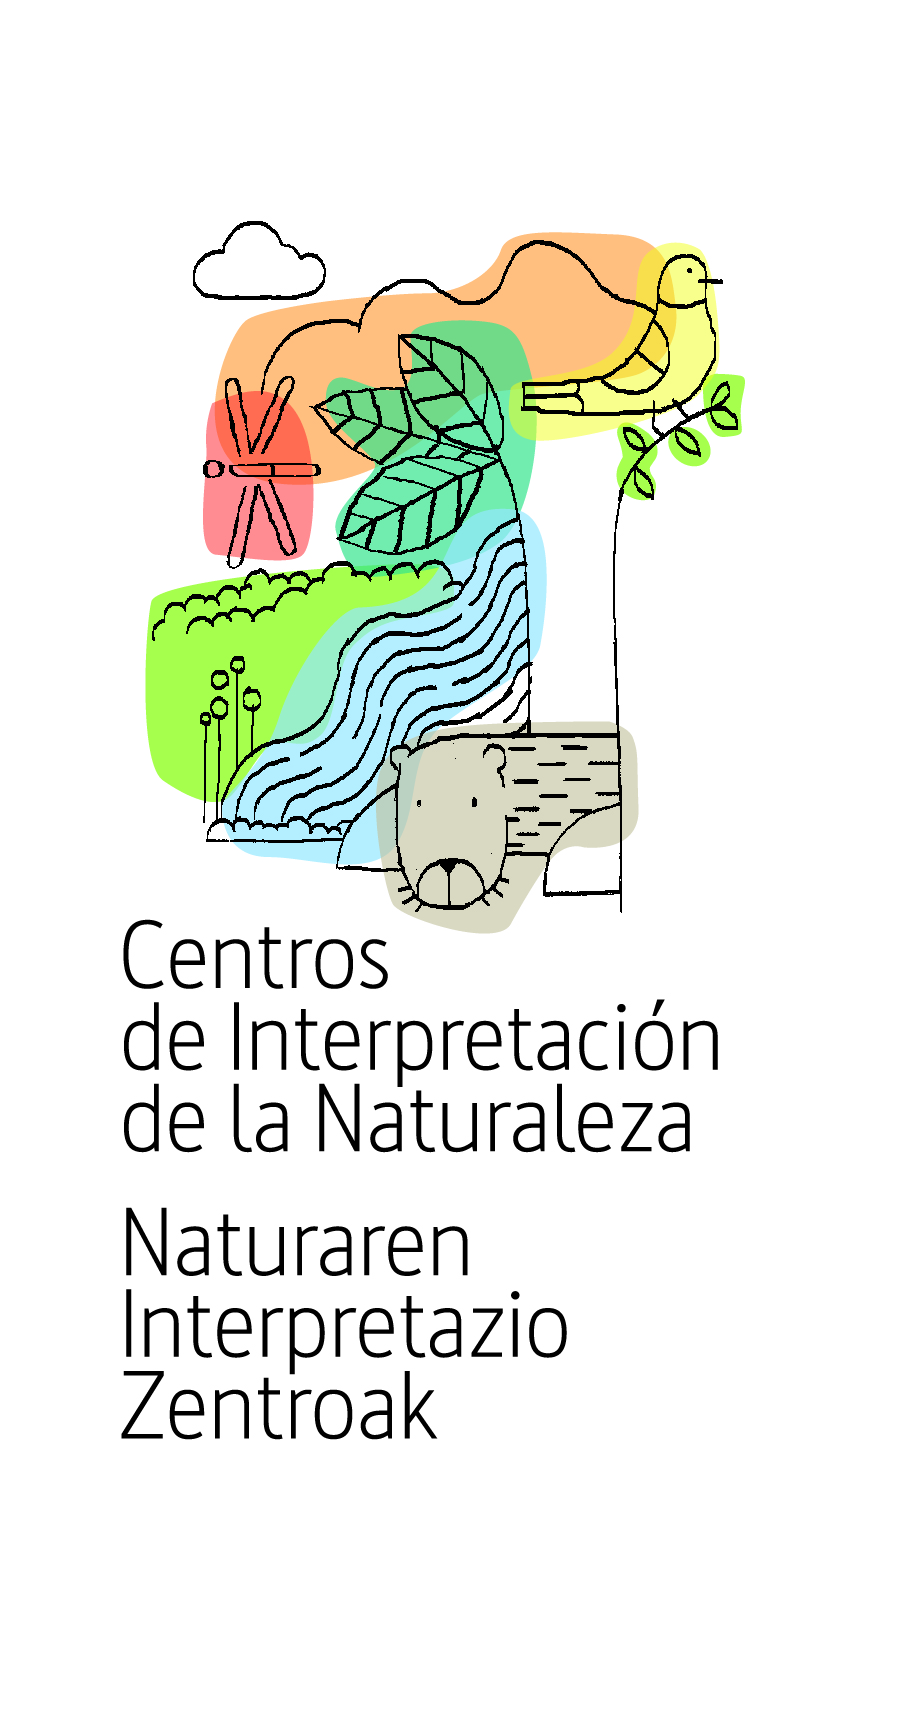 Logotipo de los Centros de Interpretación de la Naturaleza